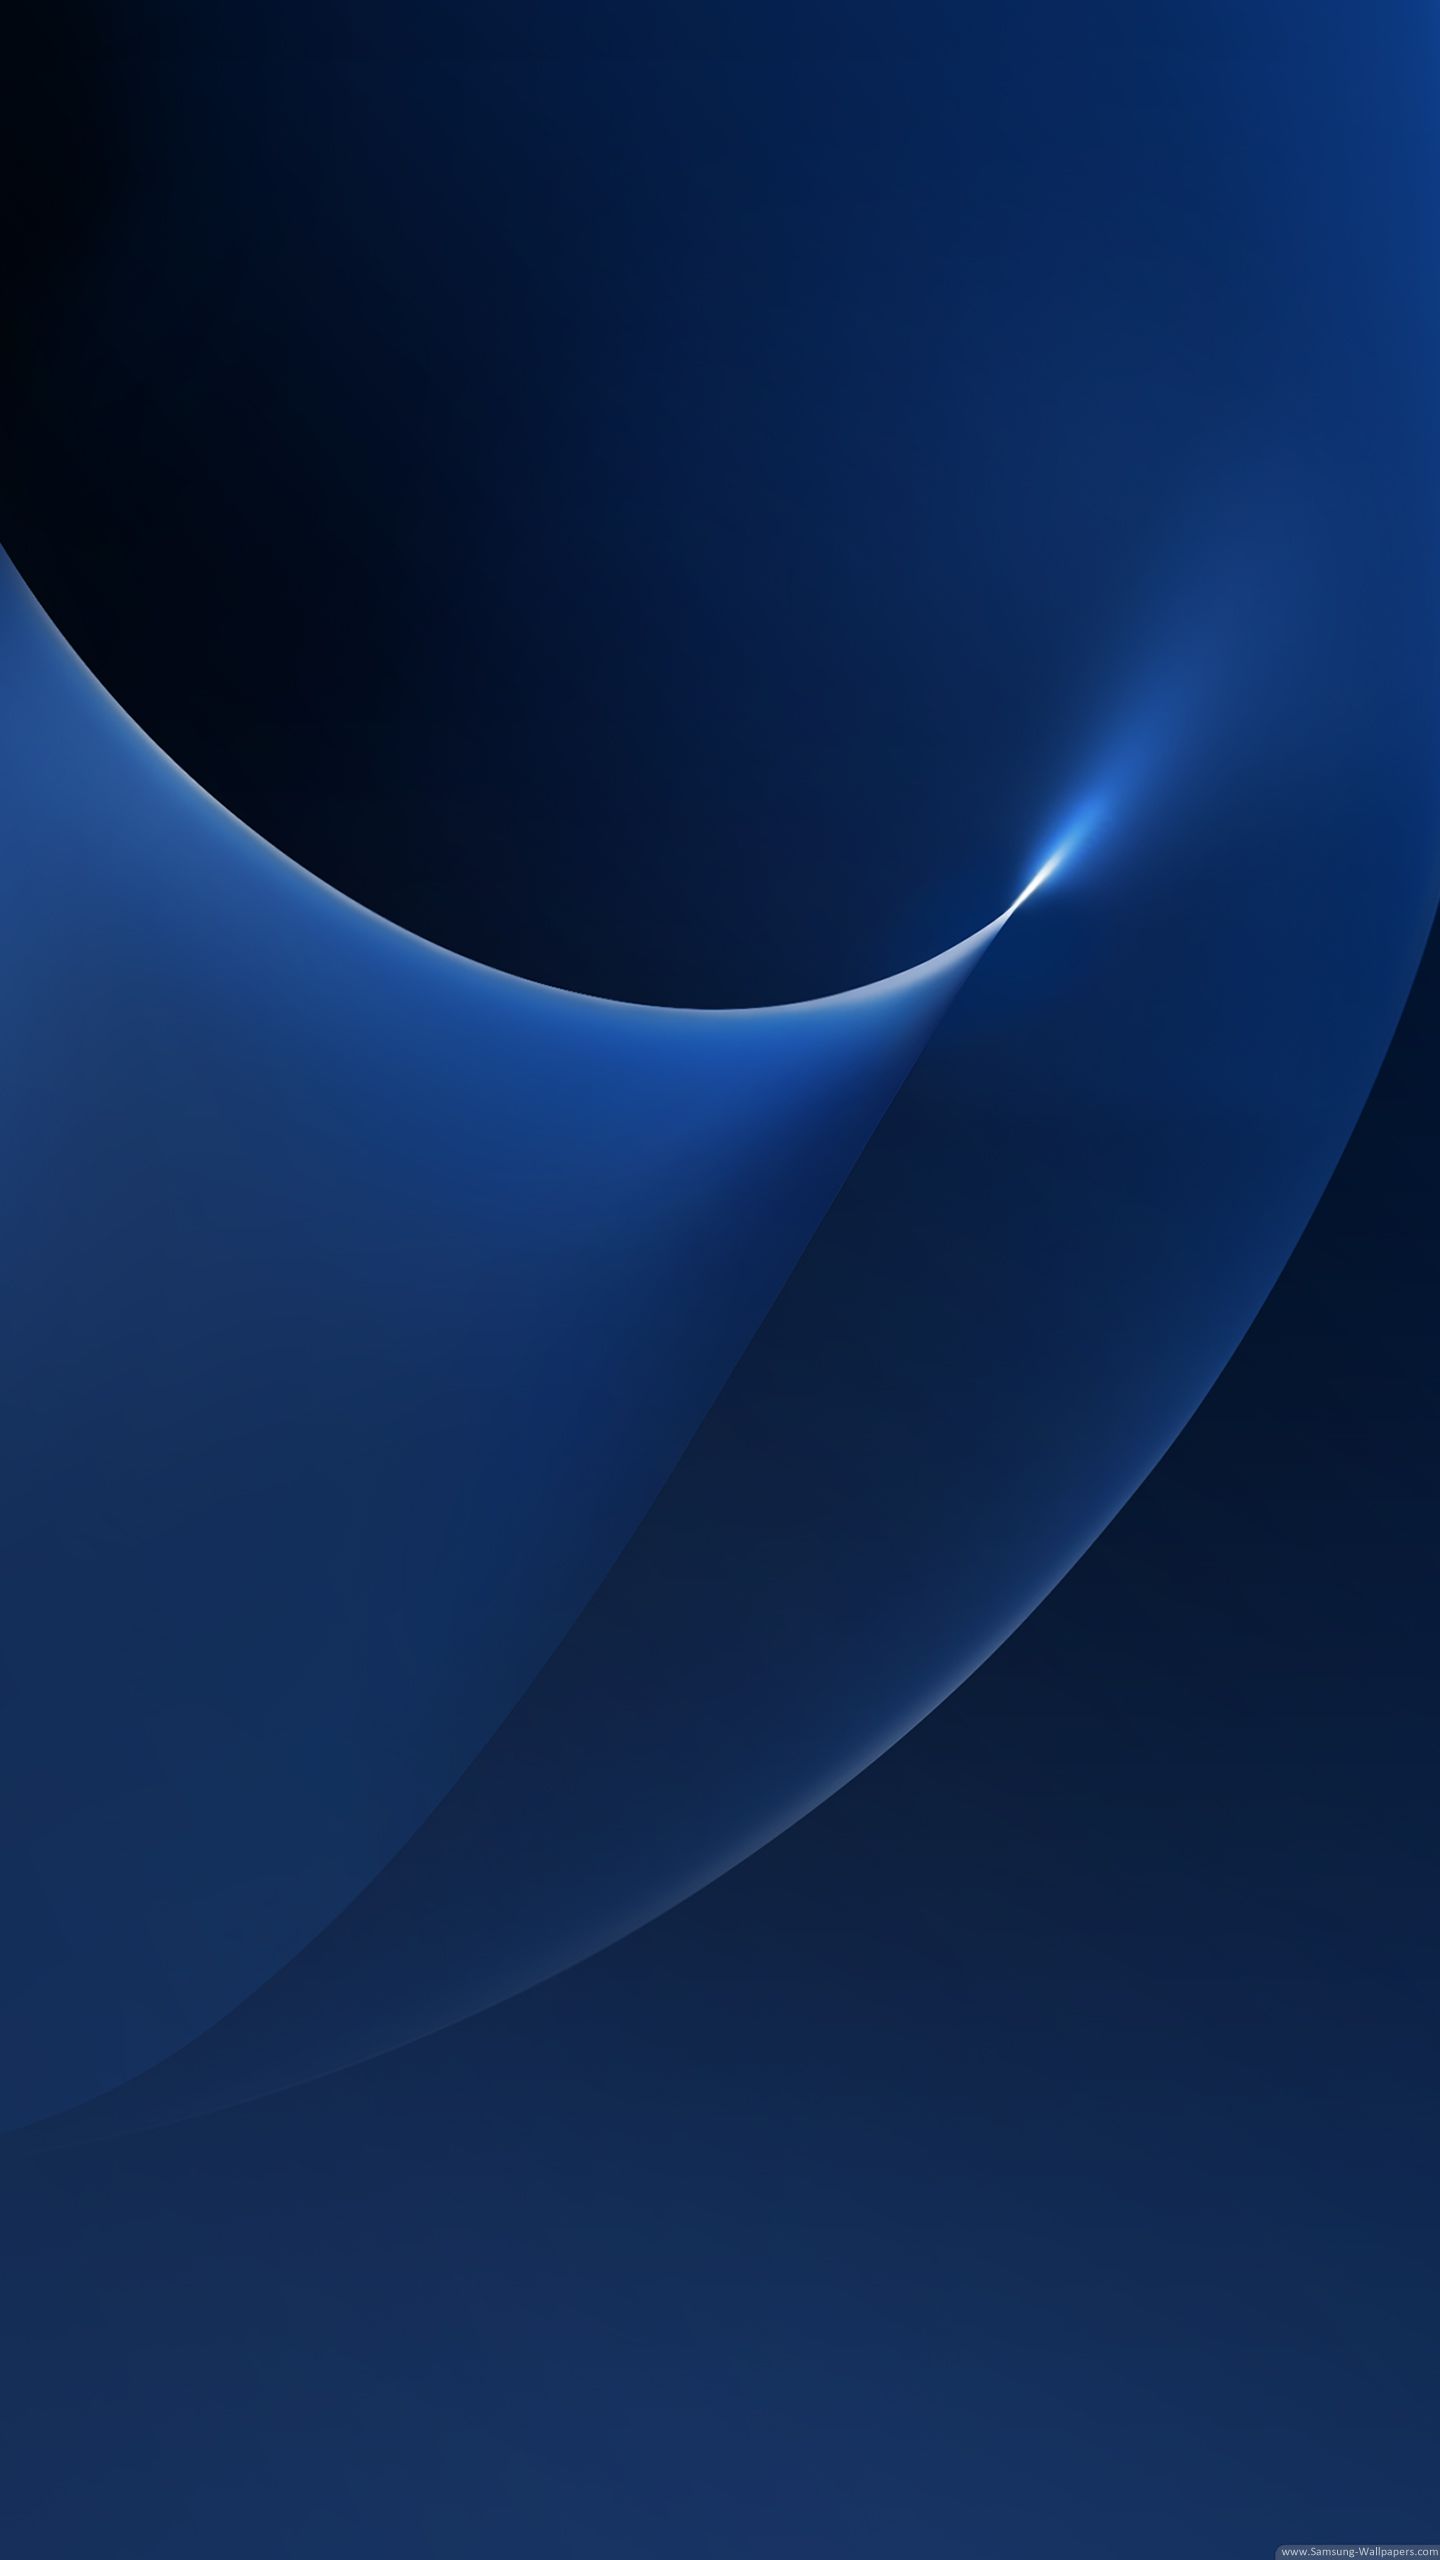 Samsung Galaxy J6 Wallpapers - Fondo de pantalla de la cueva